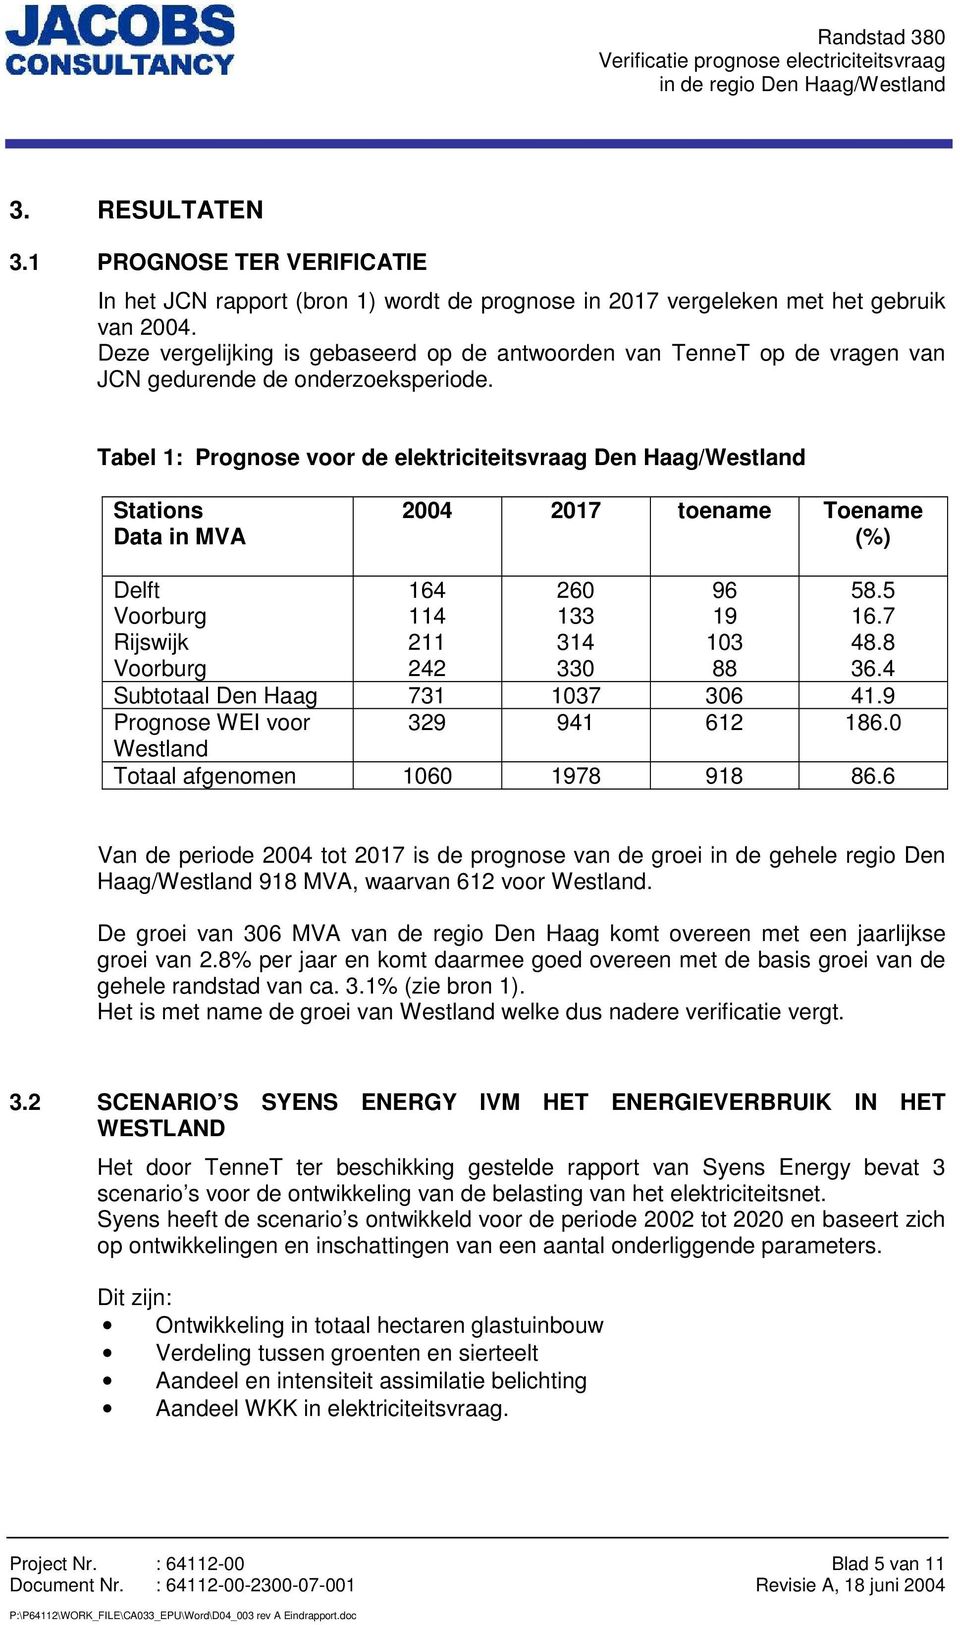 Tabel 1: Prognose voor de elektriciteitsvraag Den Haag/Westland Stations Data in MVA 2004 2017 toename Toename (%) Delft Voorburg Rijswijk Voorburg 164 114 211 242 260 133 314 330 96 19 103 88 58.